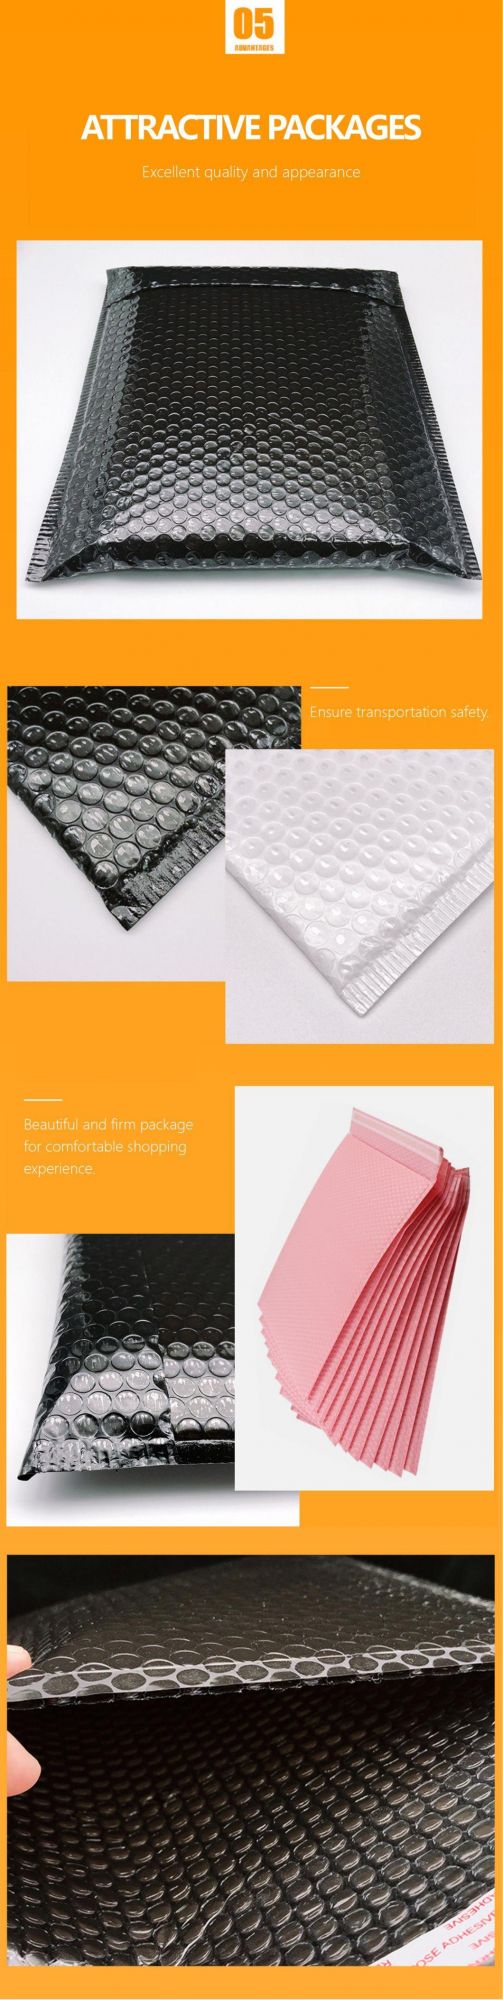 Custom Printed Padded Envelopes